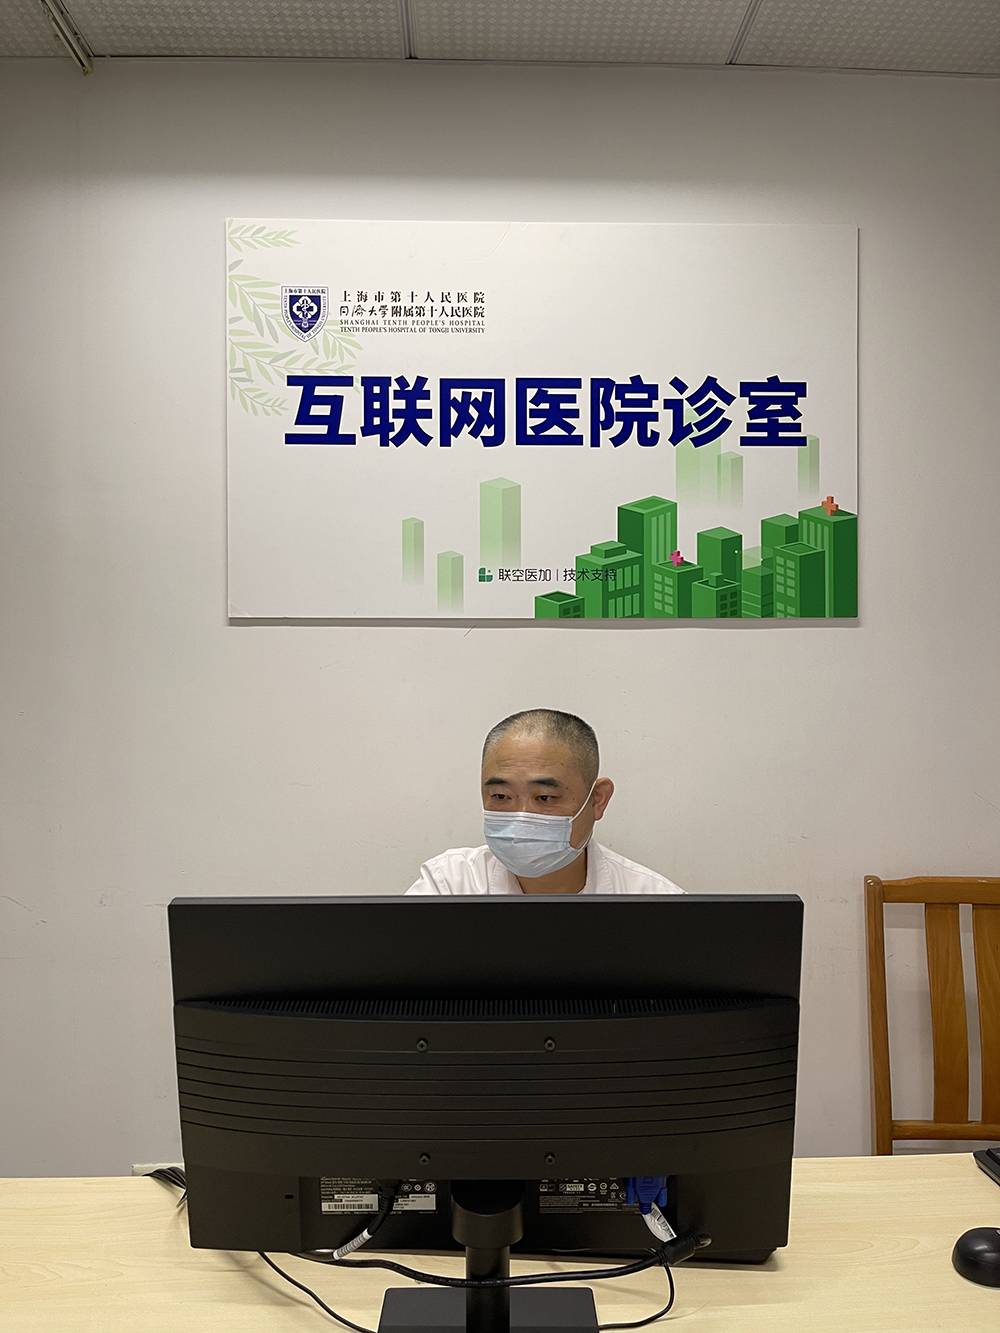 包含上海市中医医院医院代诊预约挂号，一条龙快速就医的词条